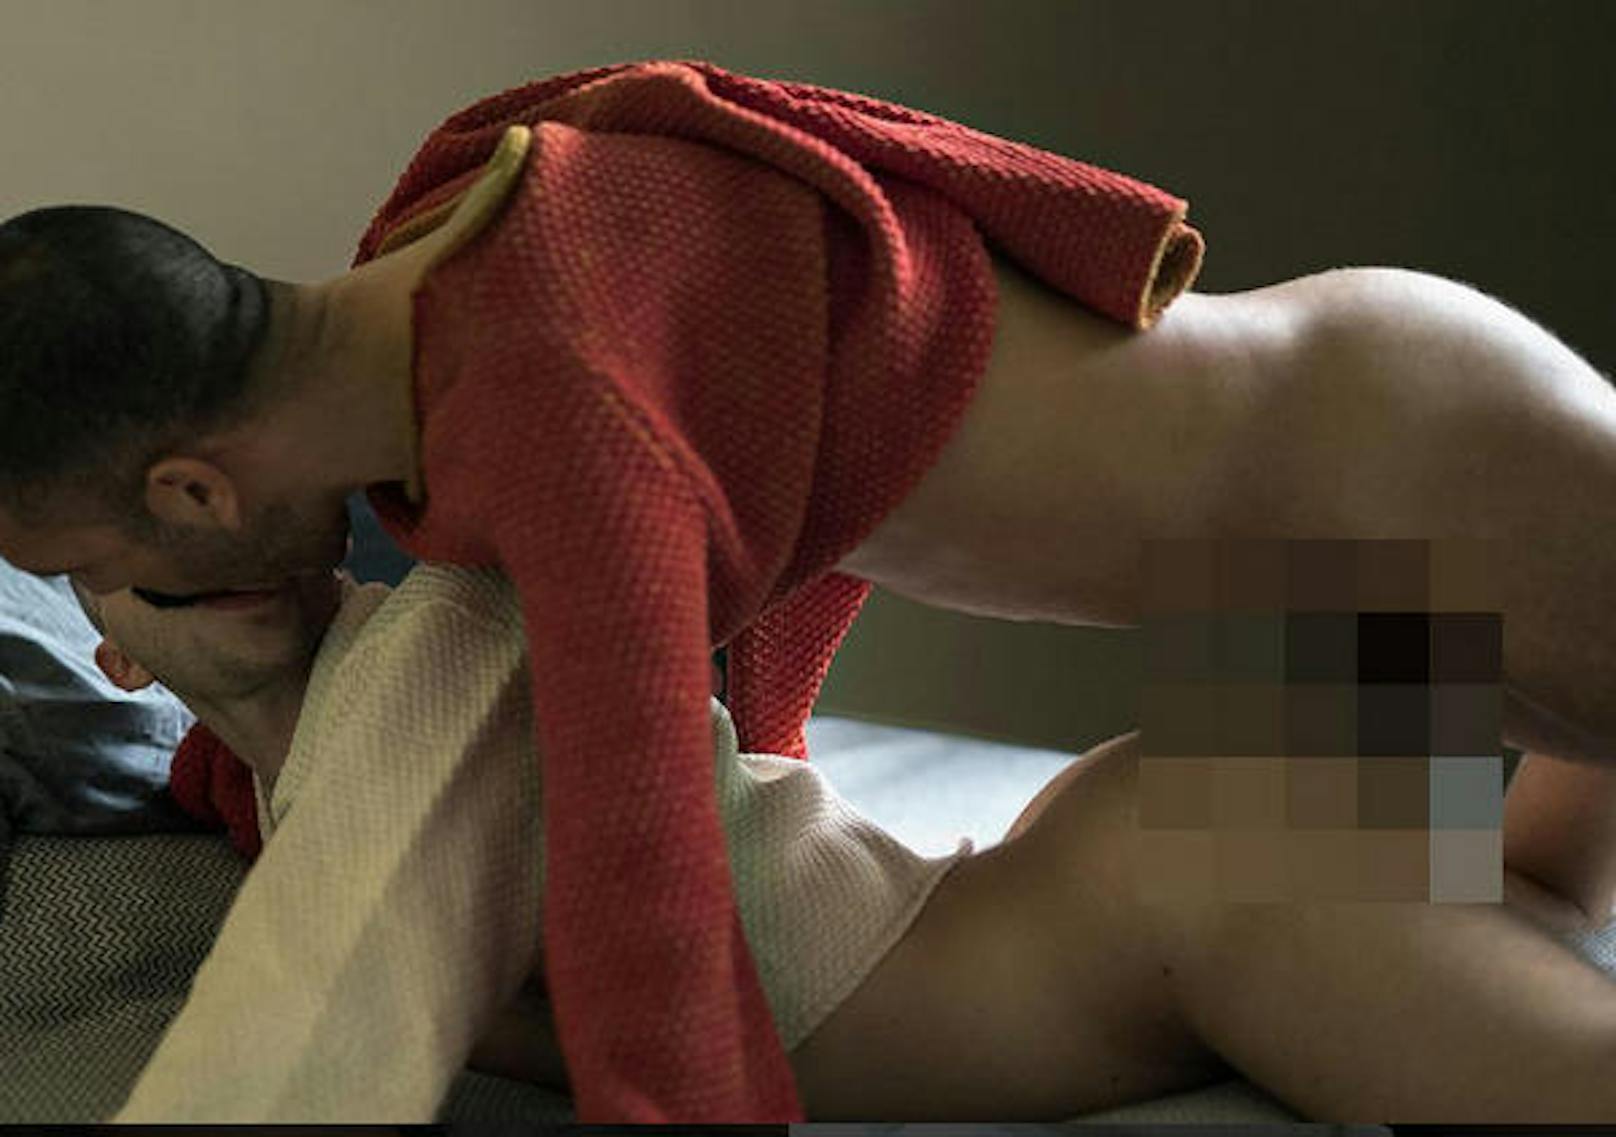 Zwei Männer beim Sex: Die Fotografin Heji Shin überschreitet nach eigenen Angaben gerne Grenzen.